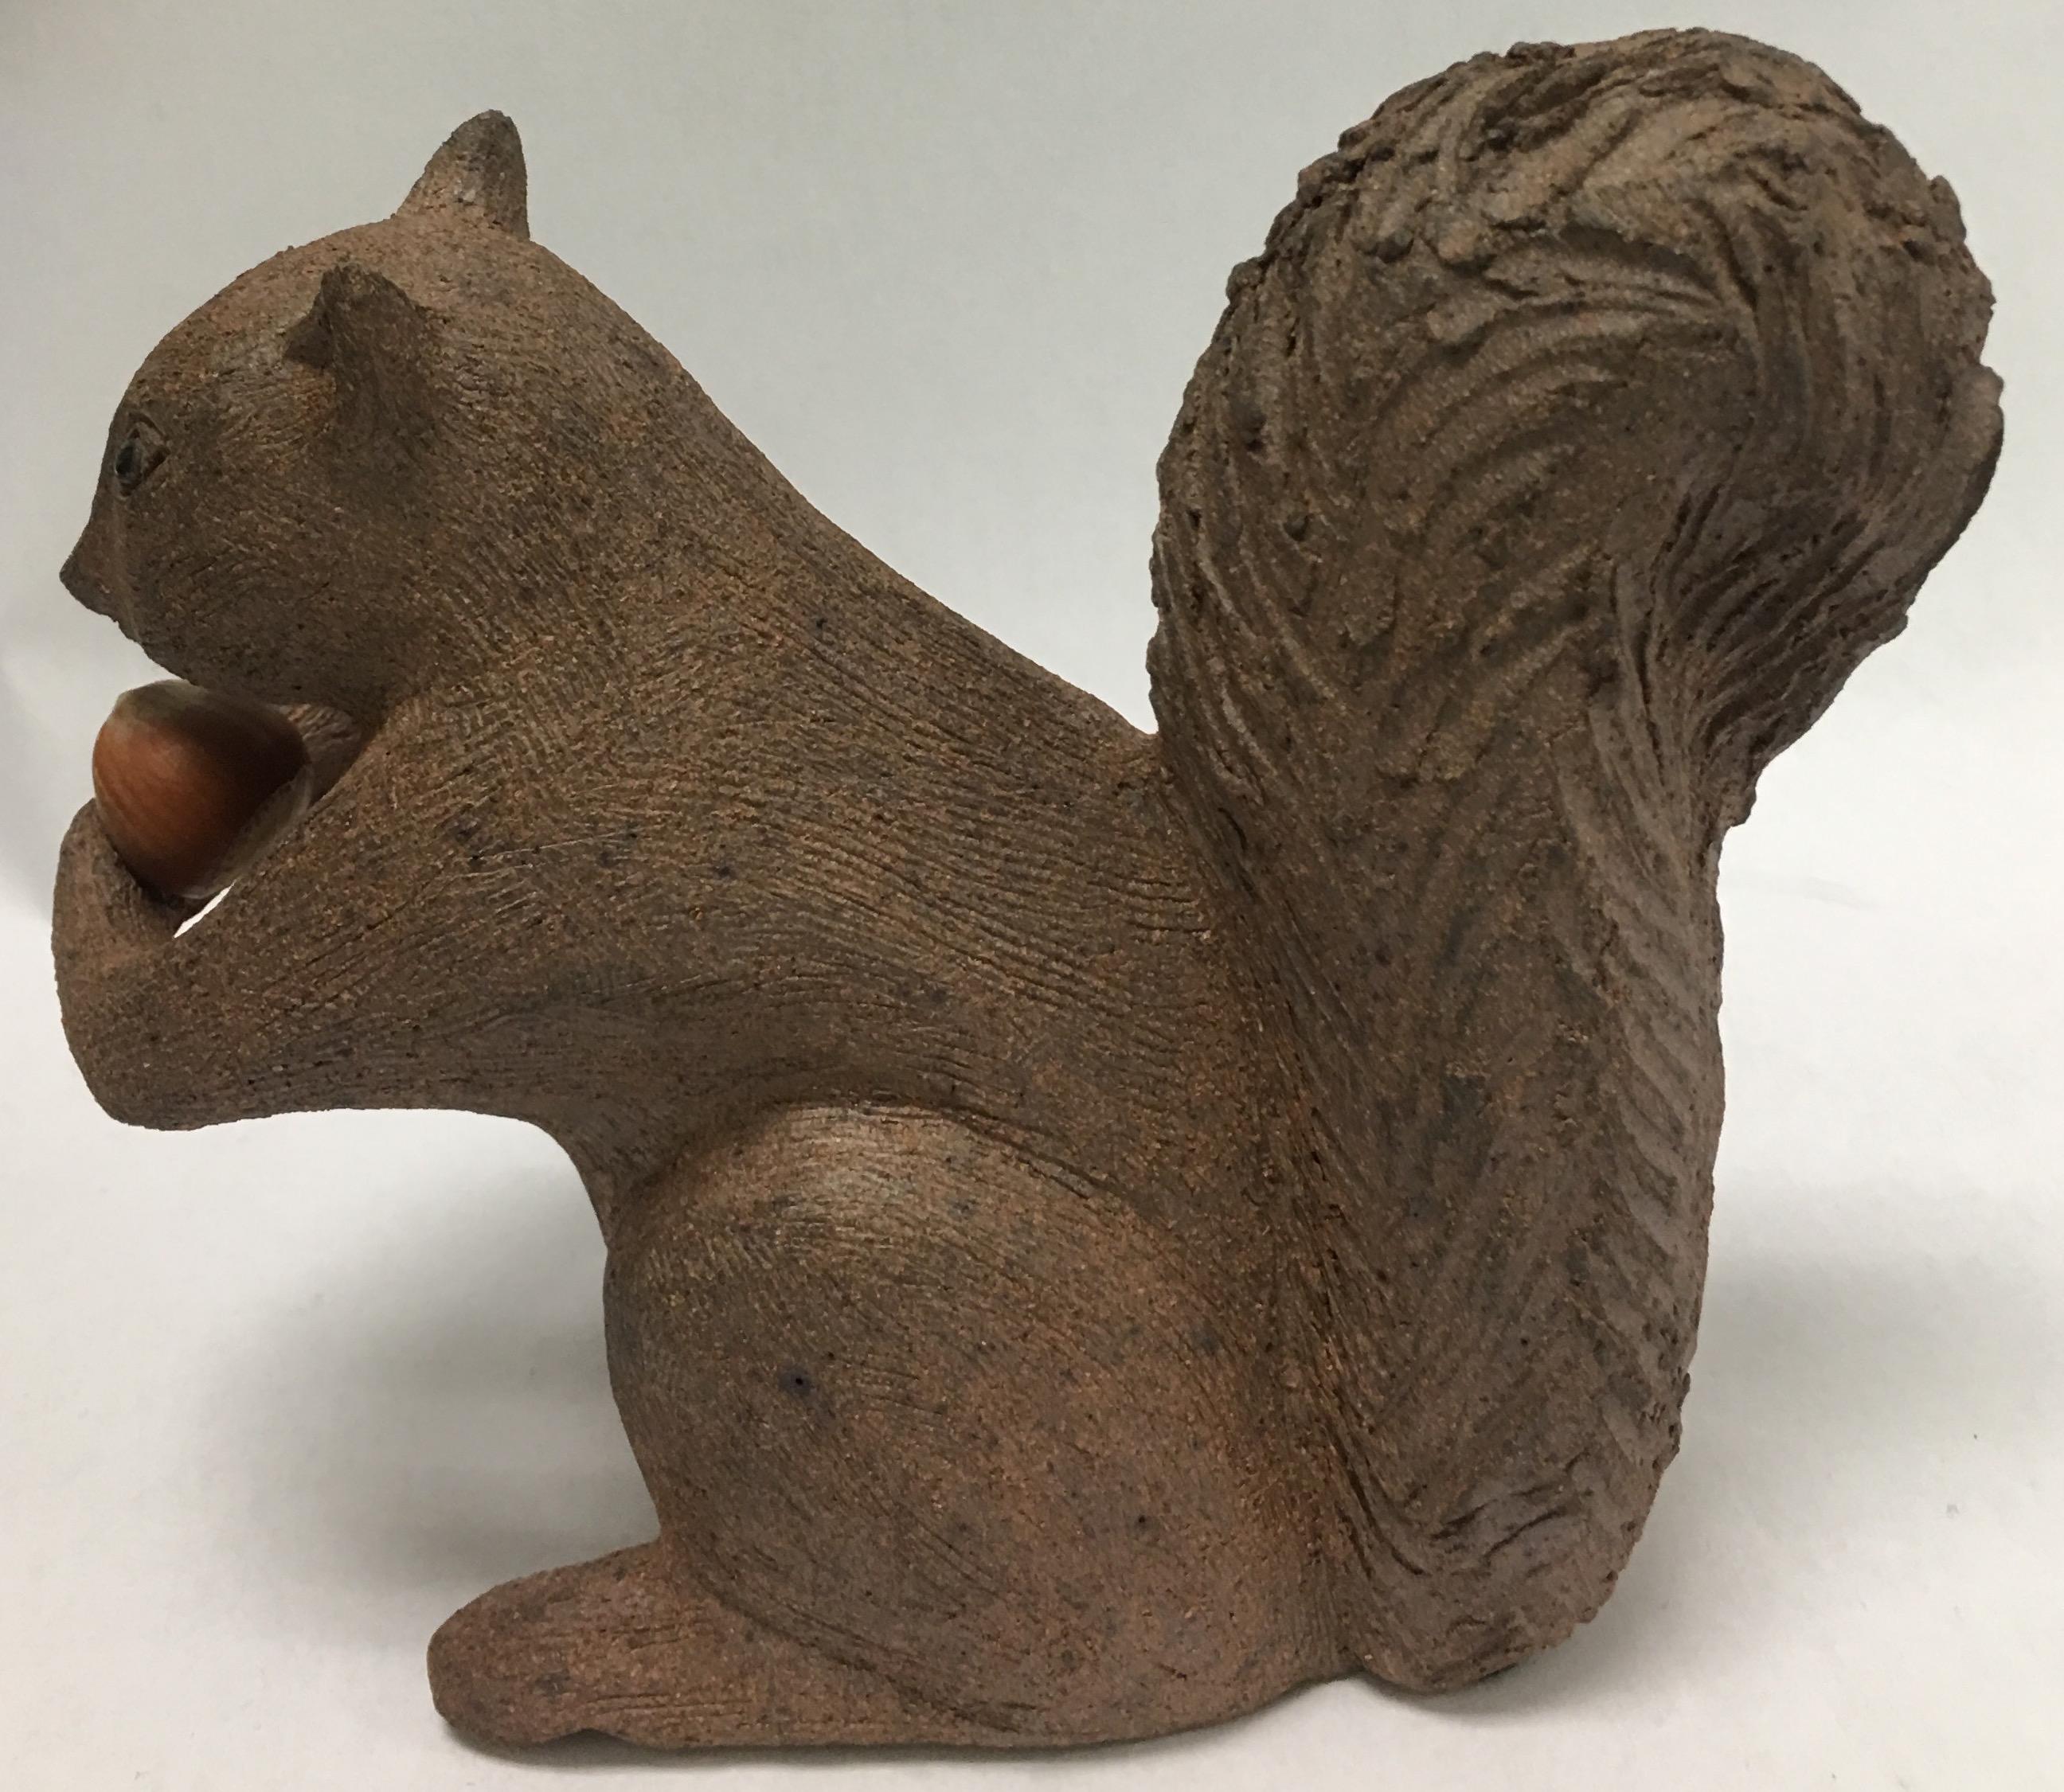 Rustic Midcentury Handmade Terra Cotta Squirrel Figurine